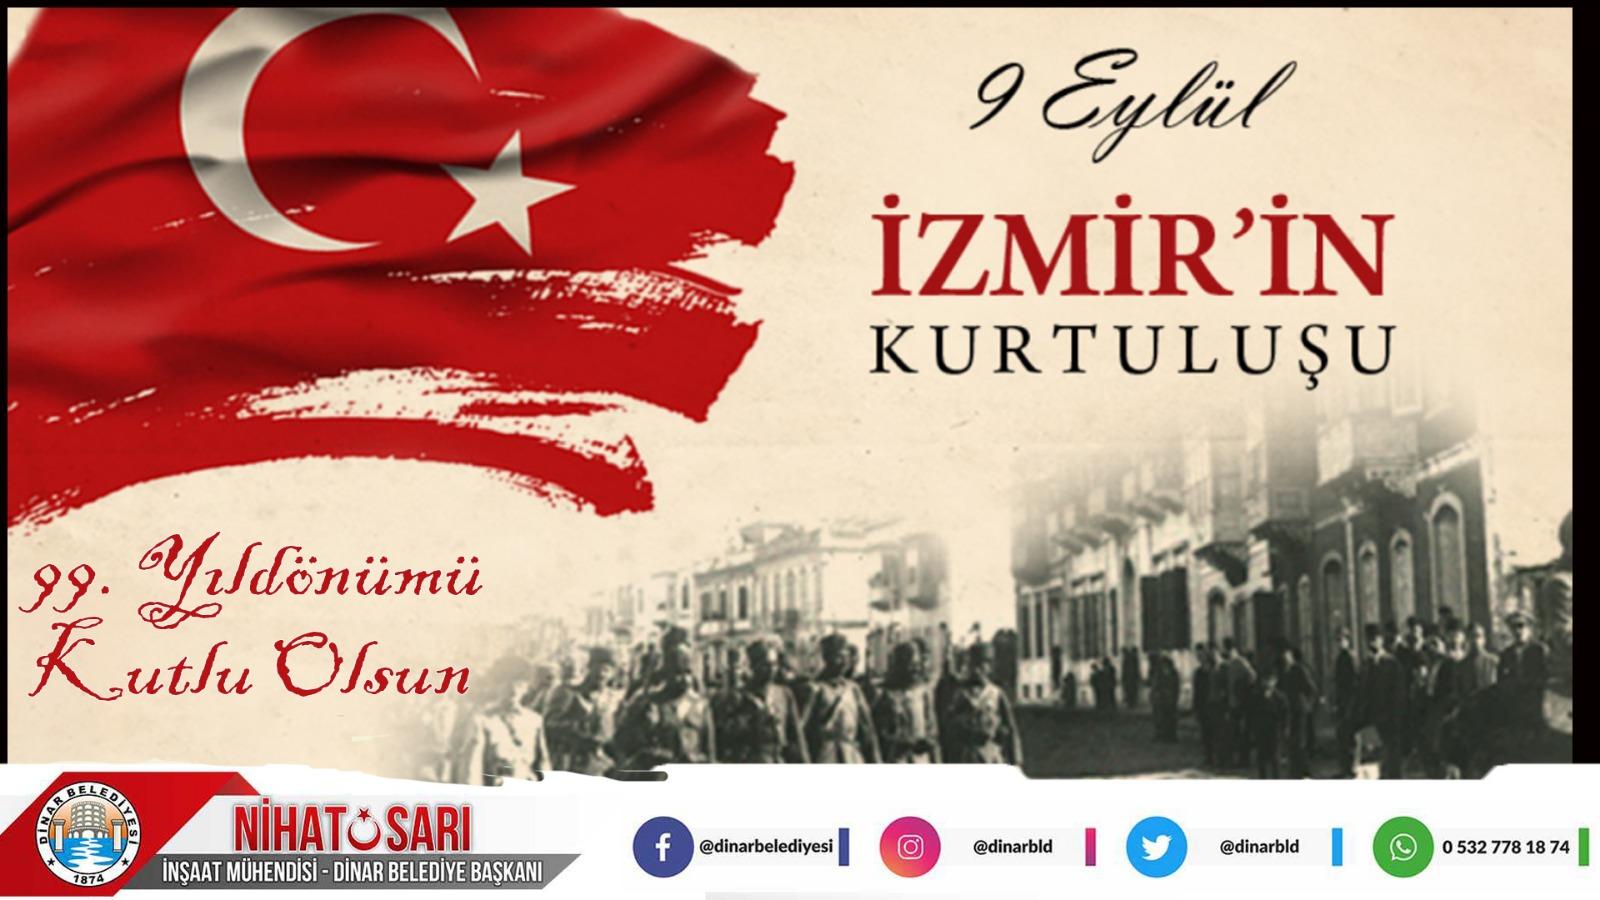 Başkan Sarı’dan İzmir’in Kurtuluş yıldönümü mesajı